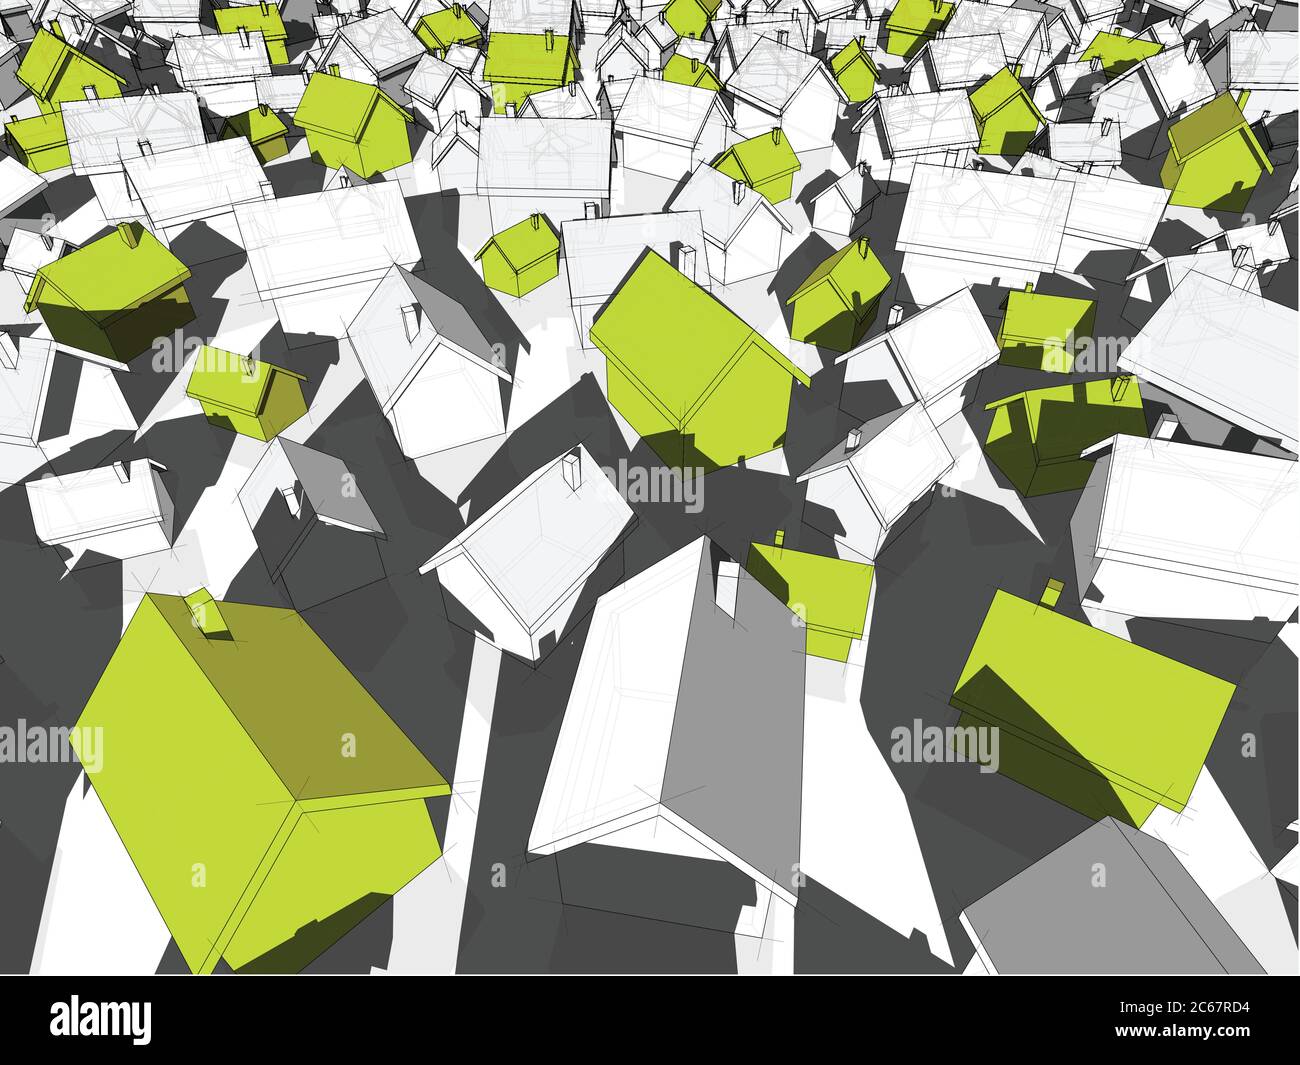 3d-Illustration von vielen chaotisch stehenden einfachen Einfamilienhäusern in verschiedenen Größen mit Schatten und grünen Öko-Häusern, die sich von anderen abhoben Stock Vektor